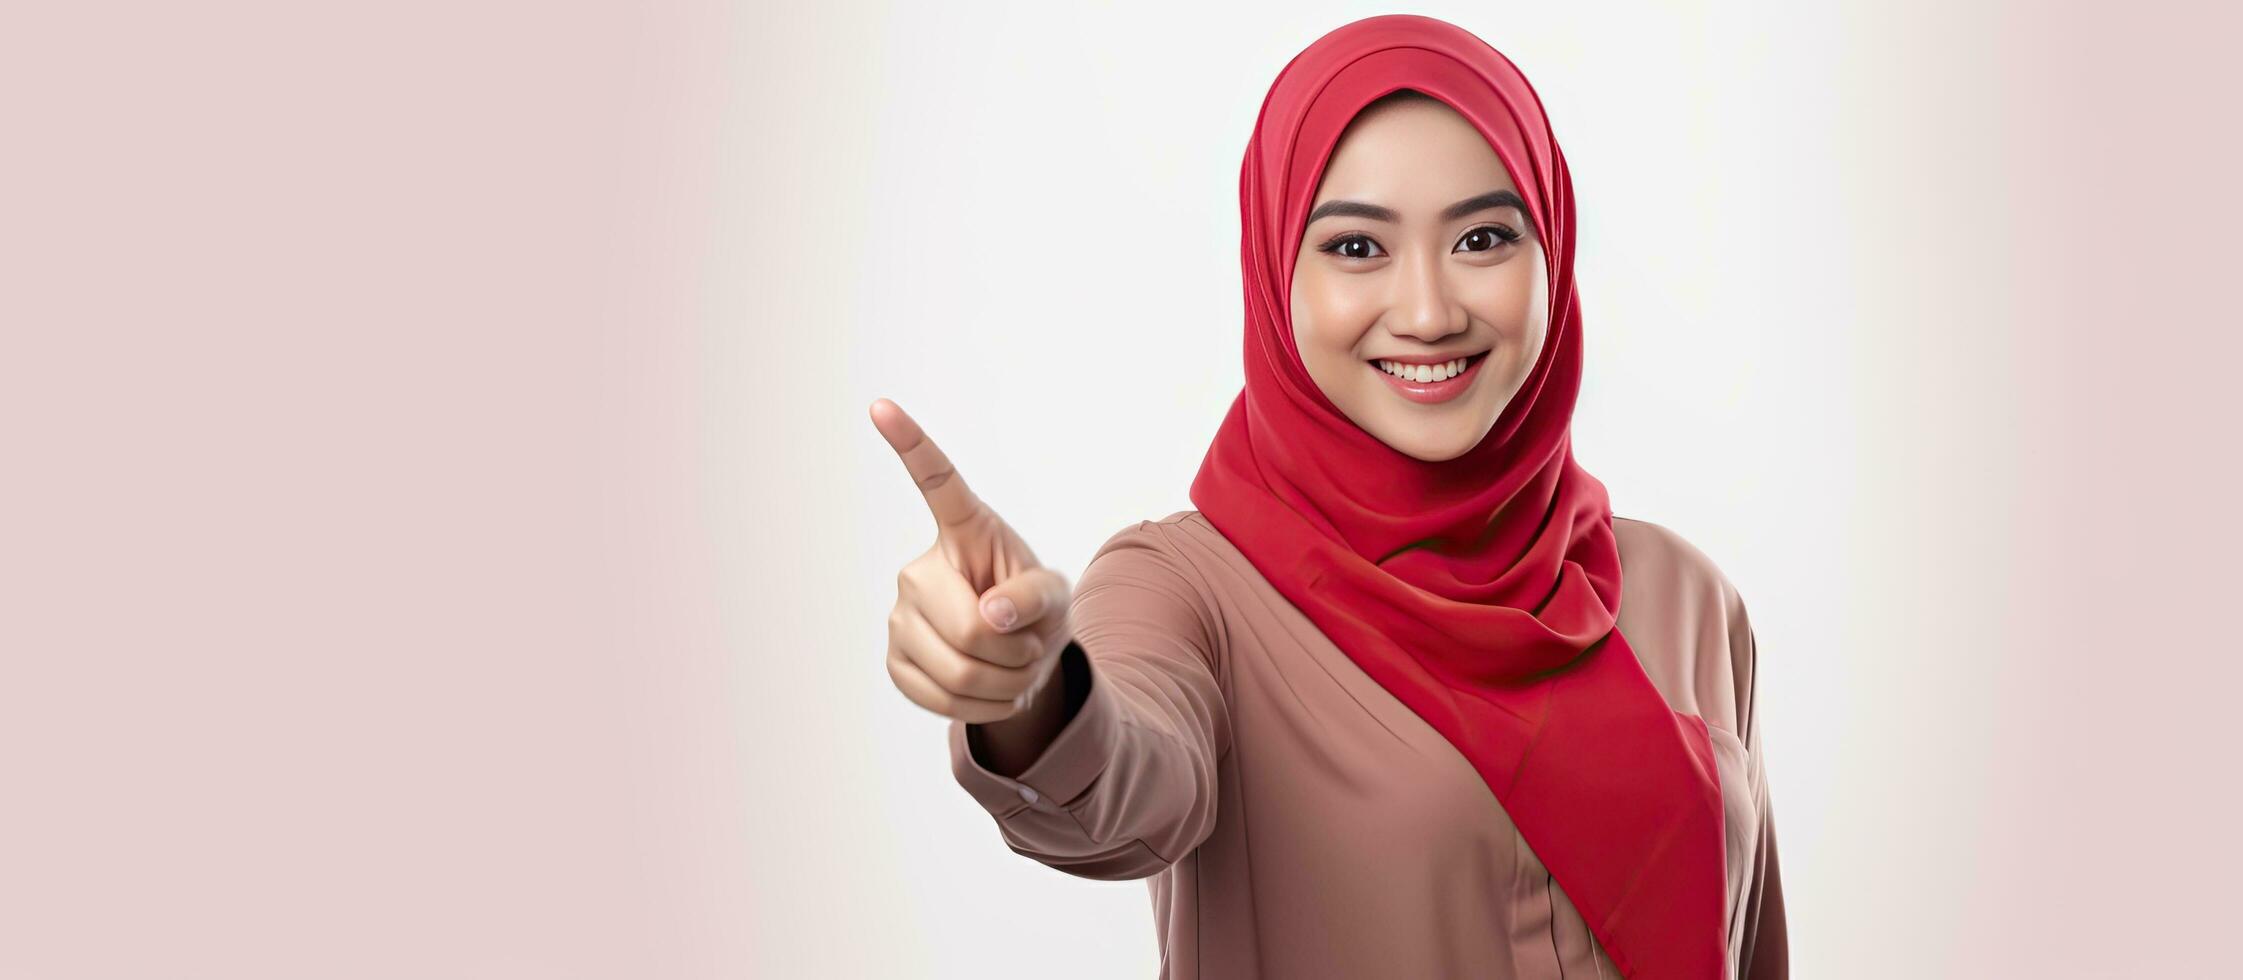 ásia muçulmano mulher apontando dedos isolado em branco fundo a comemorar indonésio independência dia em 17 agosto foto